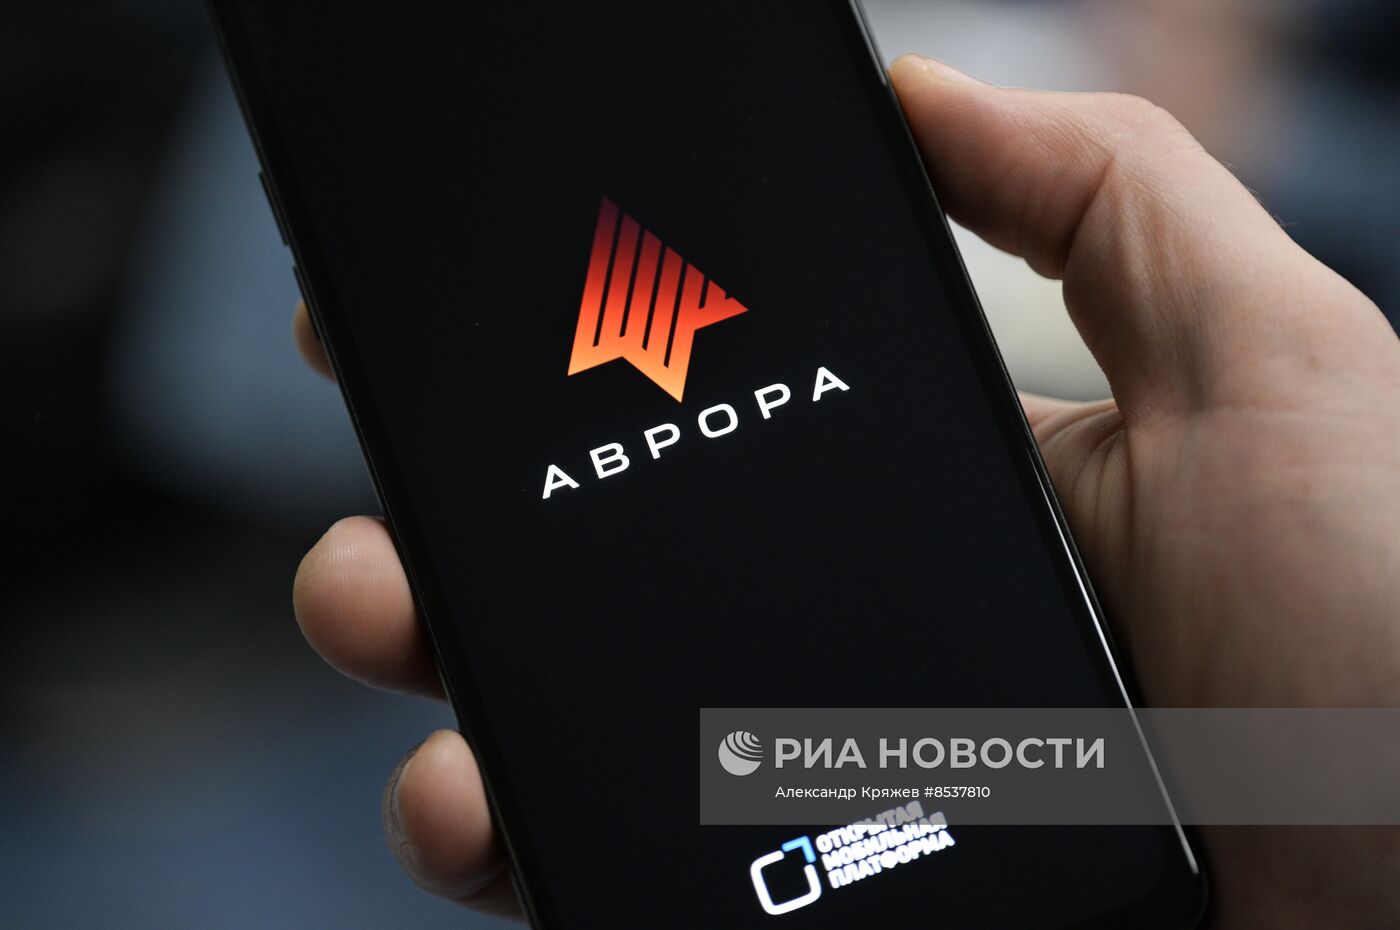 Тестирование российской операционной системы "Аврора" в Новосибирске